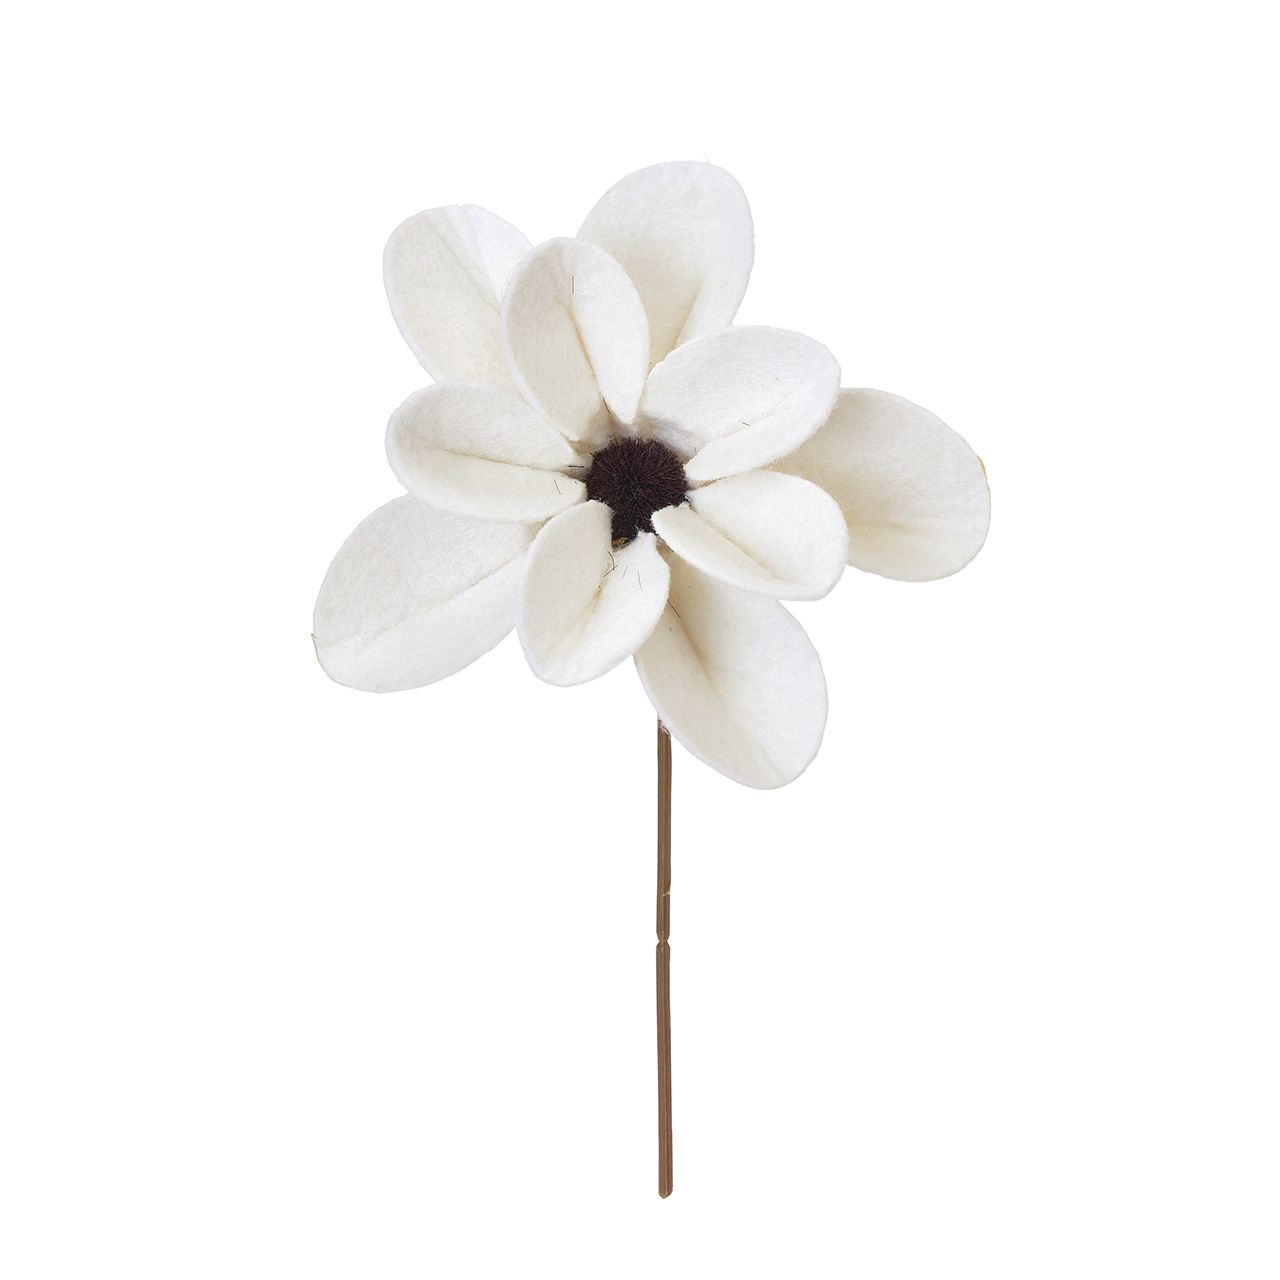 マイフラ 通販 Magiq フェルトガーデニアピック ホワイト アーティフィシャルフラワー 造花 Fx 花径9 5 長さ 約15cm ホワイト Magiq アーティフィシャルフラワー 造花 全国にmagiq 花器 花資材などをお届けします